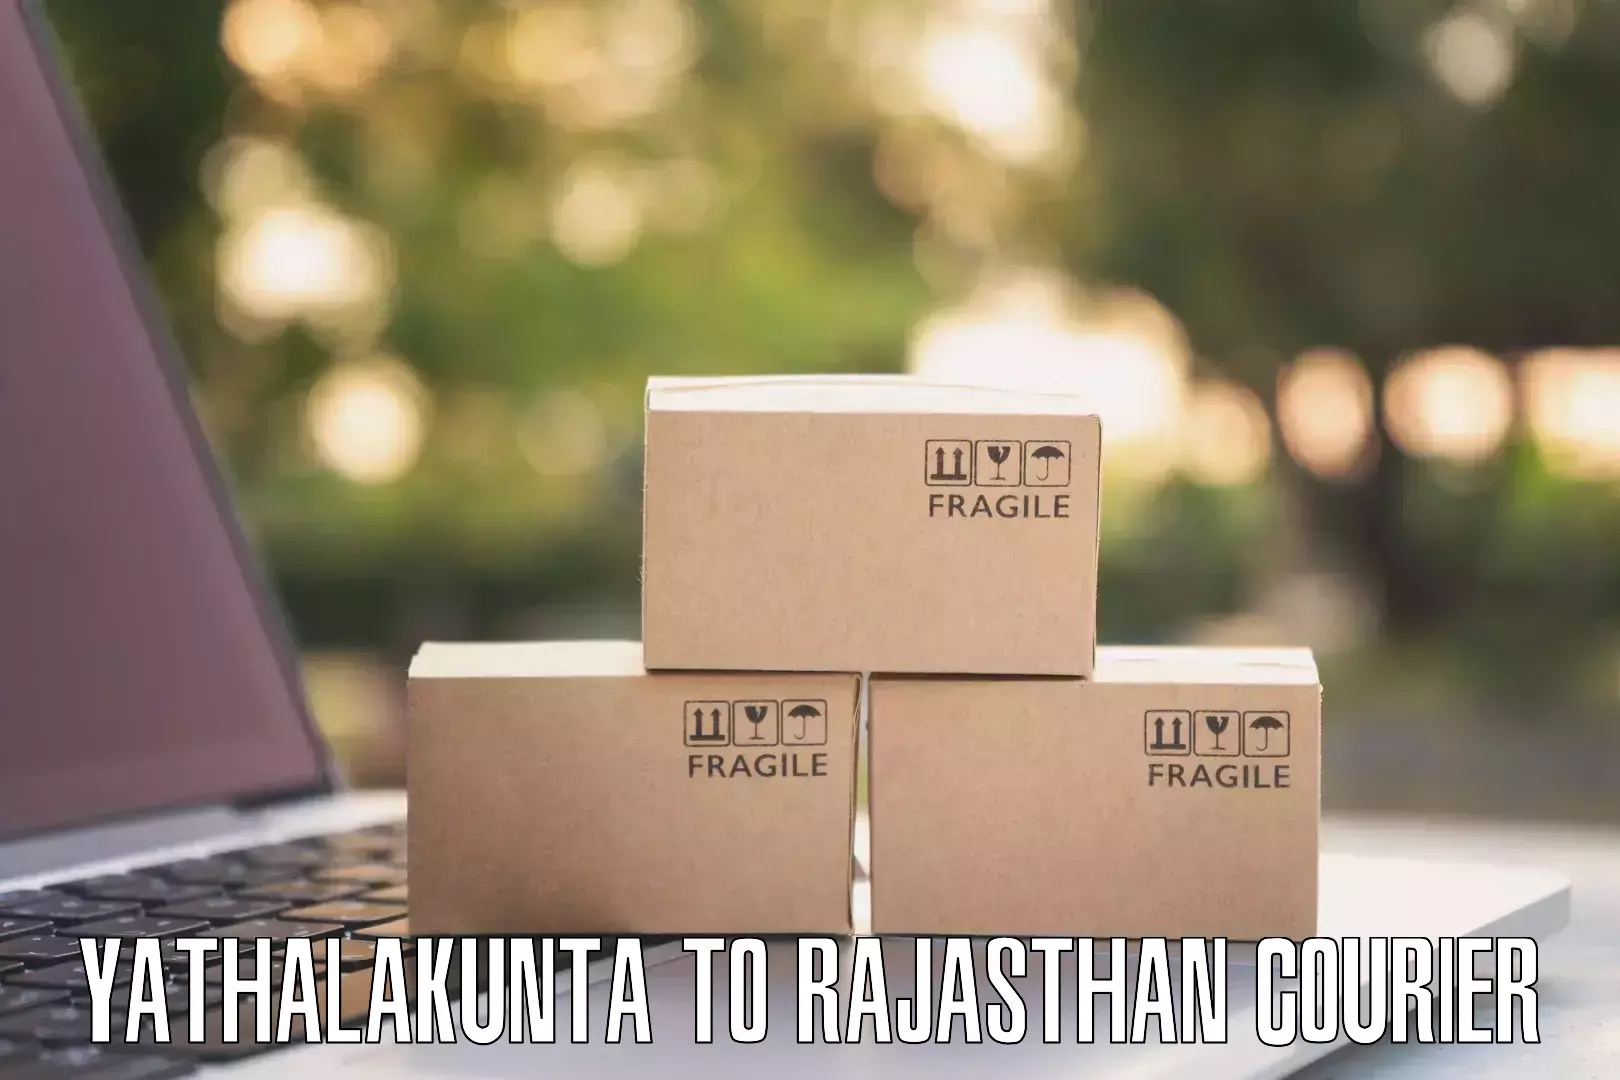 Modern parcel services Yathalakunta to Banswara